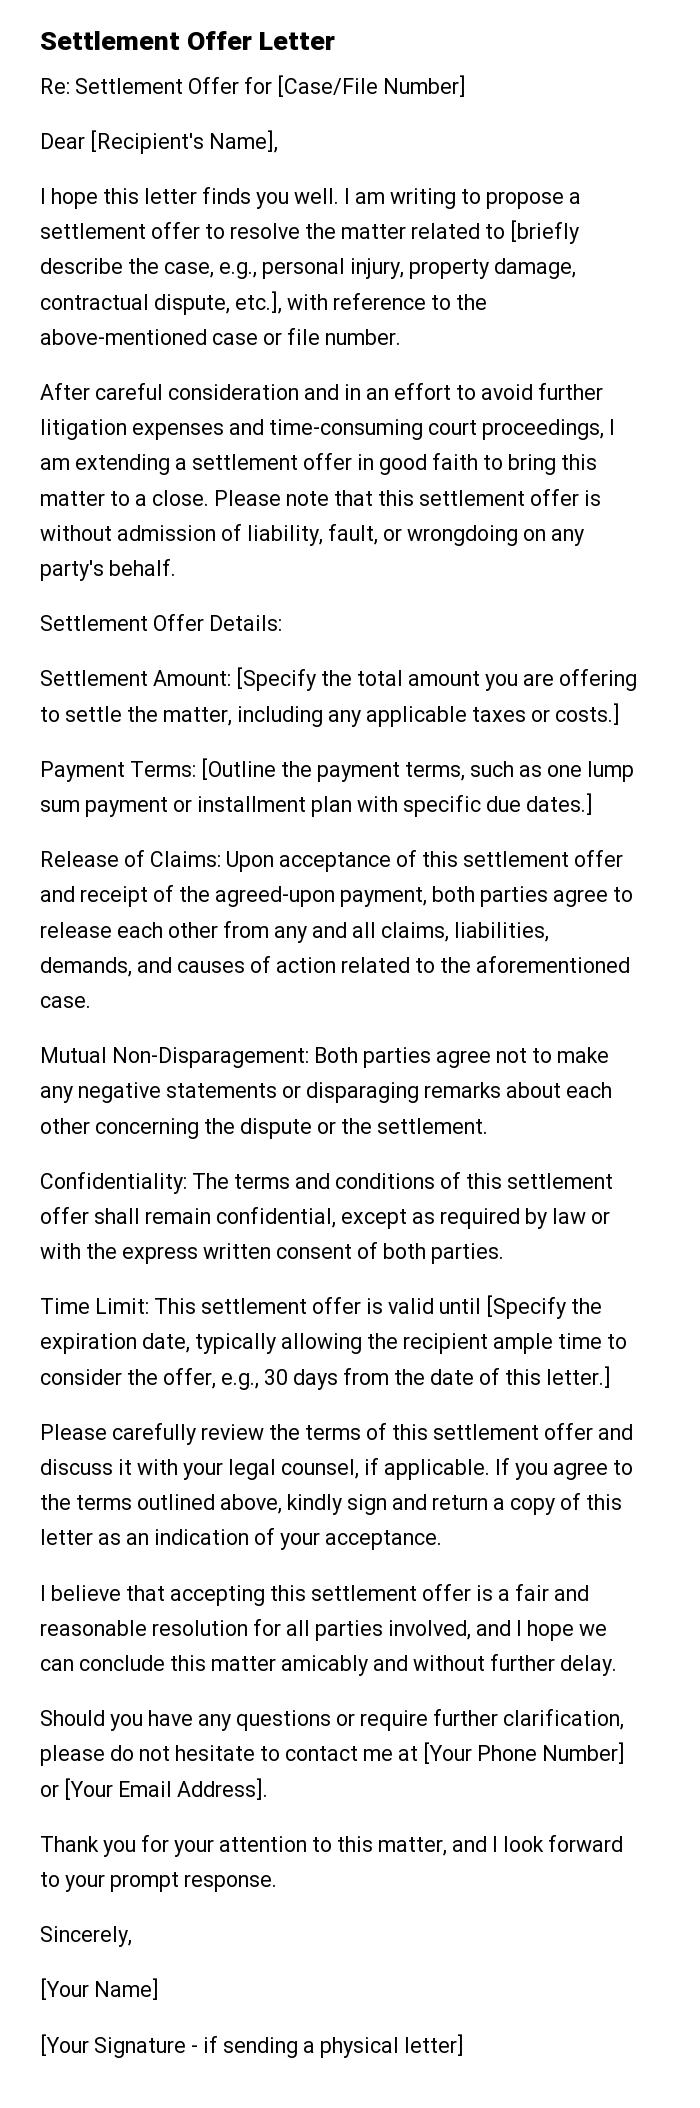 Settlement Offer Letter